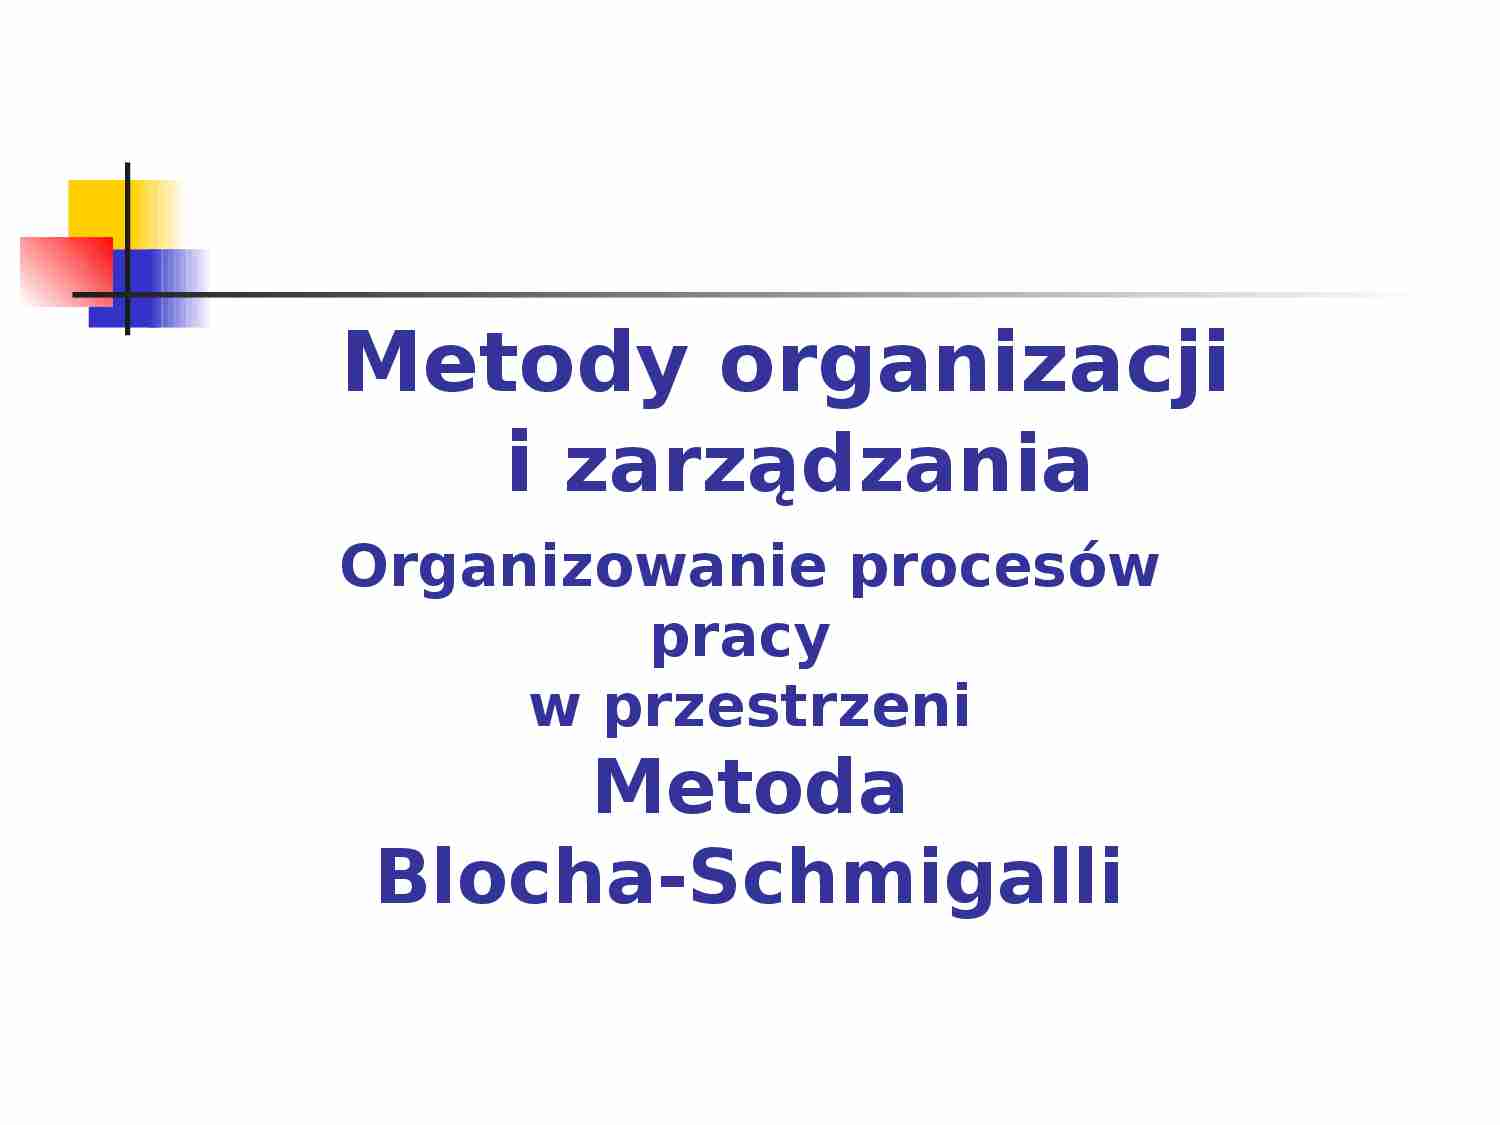 Organizowanie procesów pracy  w przestrzeni Metoda Blocha-Schmigalli - prezentacja - strona 1